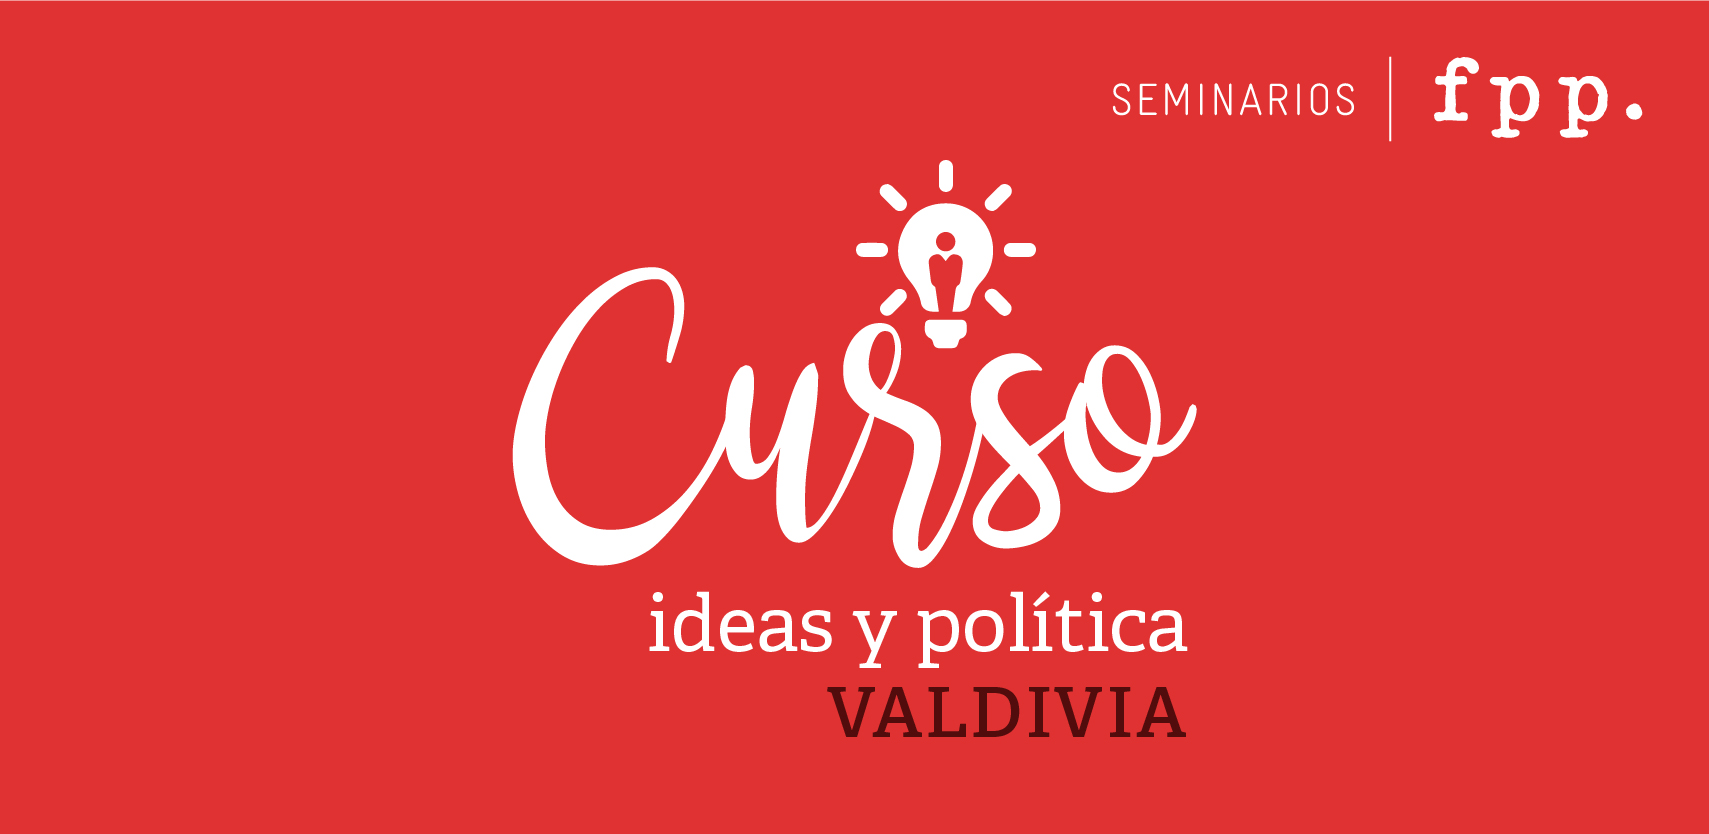 Curso Ideas y Política FPP | Valdivia 2018